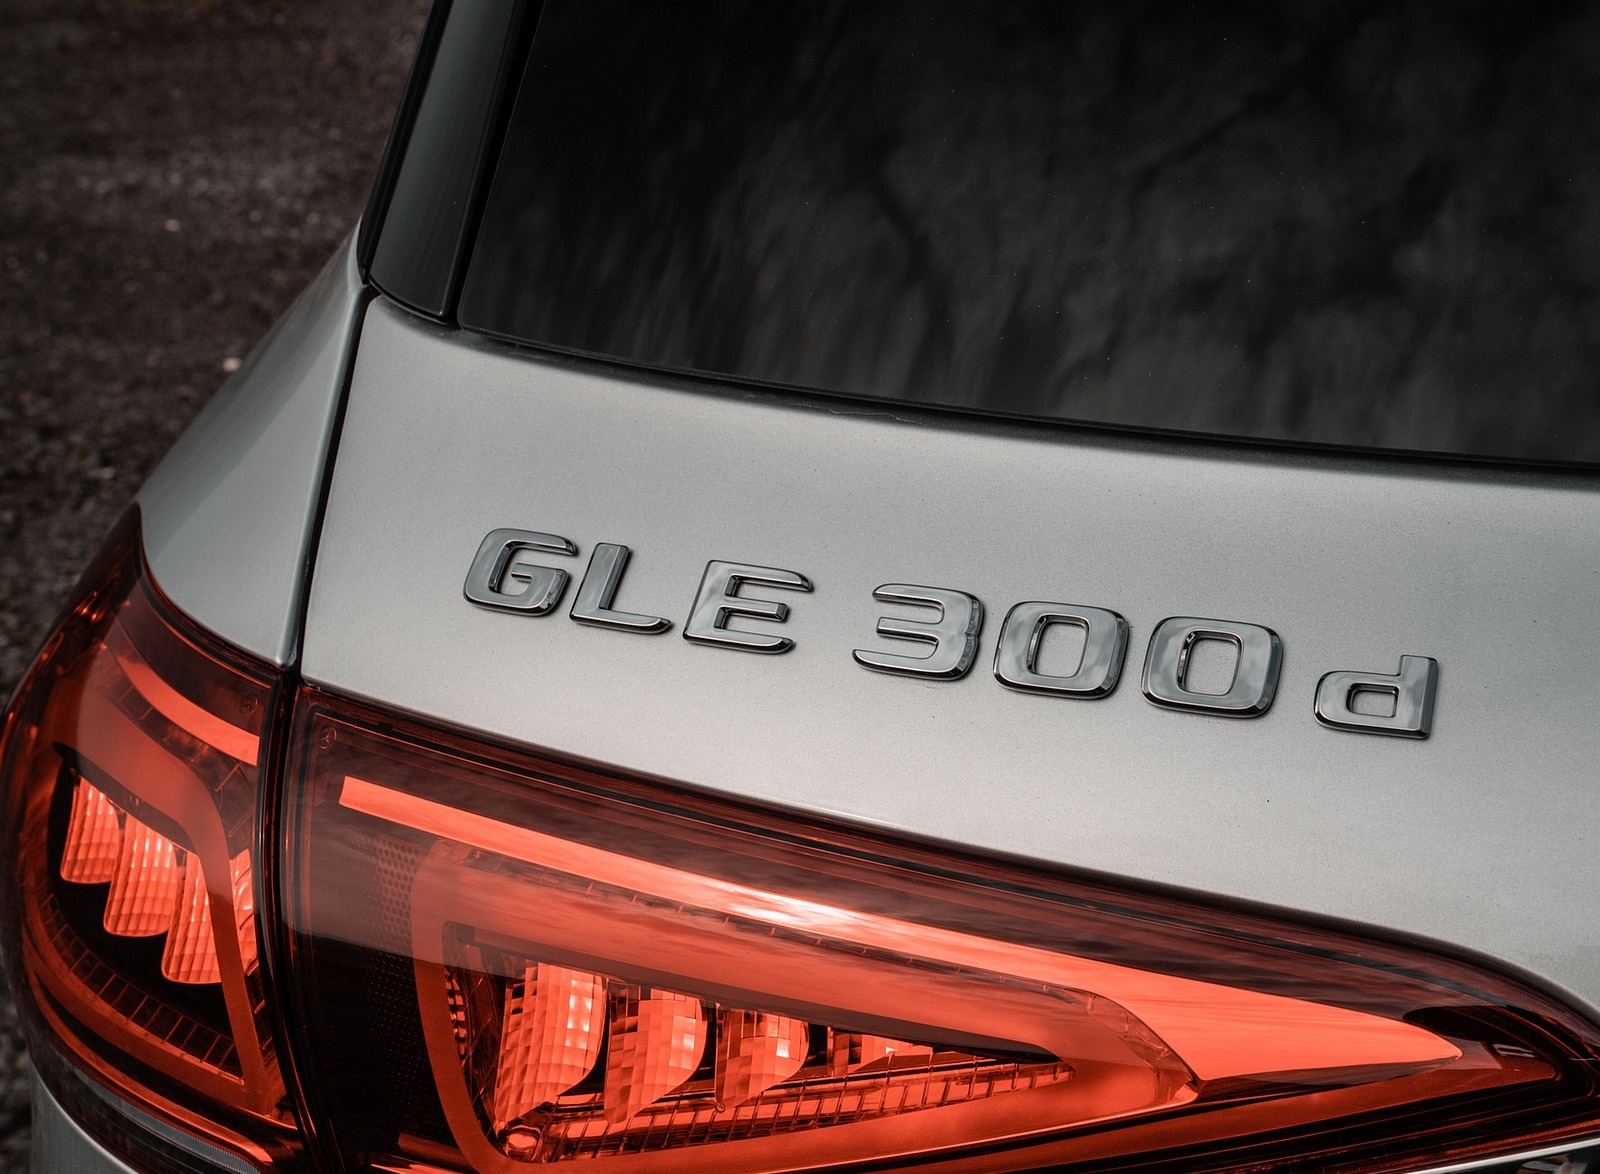 2020 Mercedes-Benz GLE 300d (UK-Spec) Badge Wallpapers #36 of 55